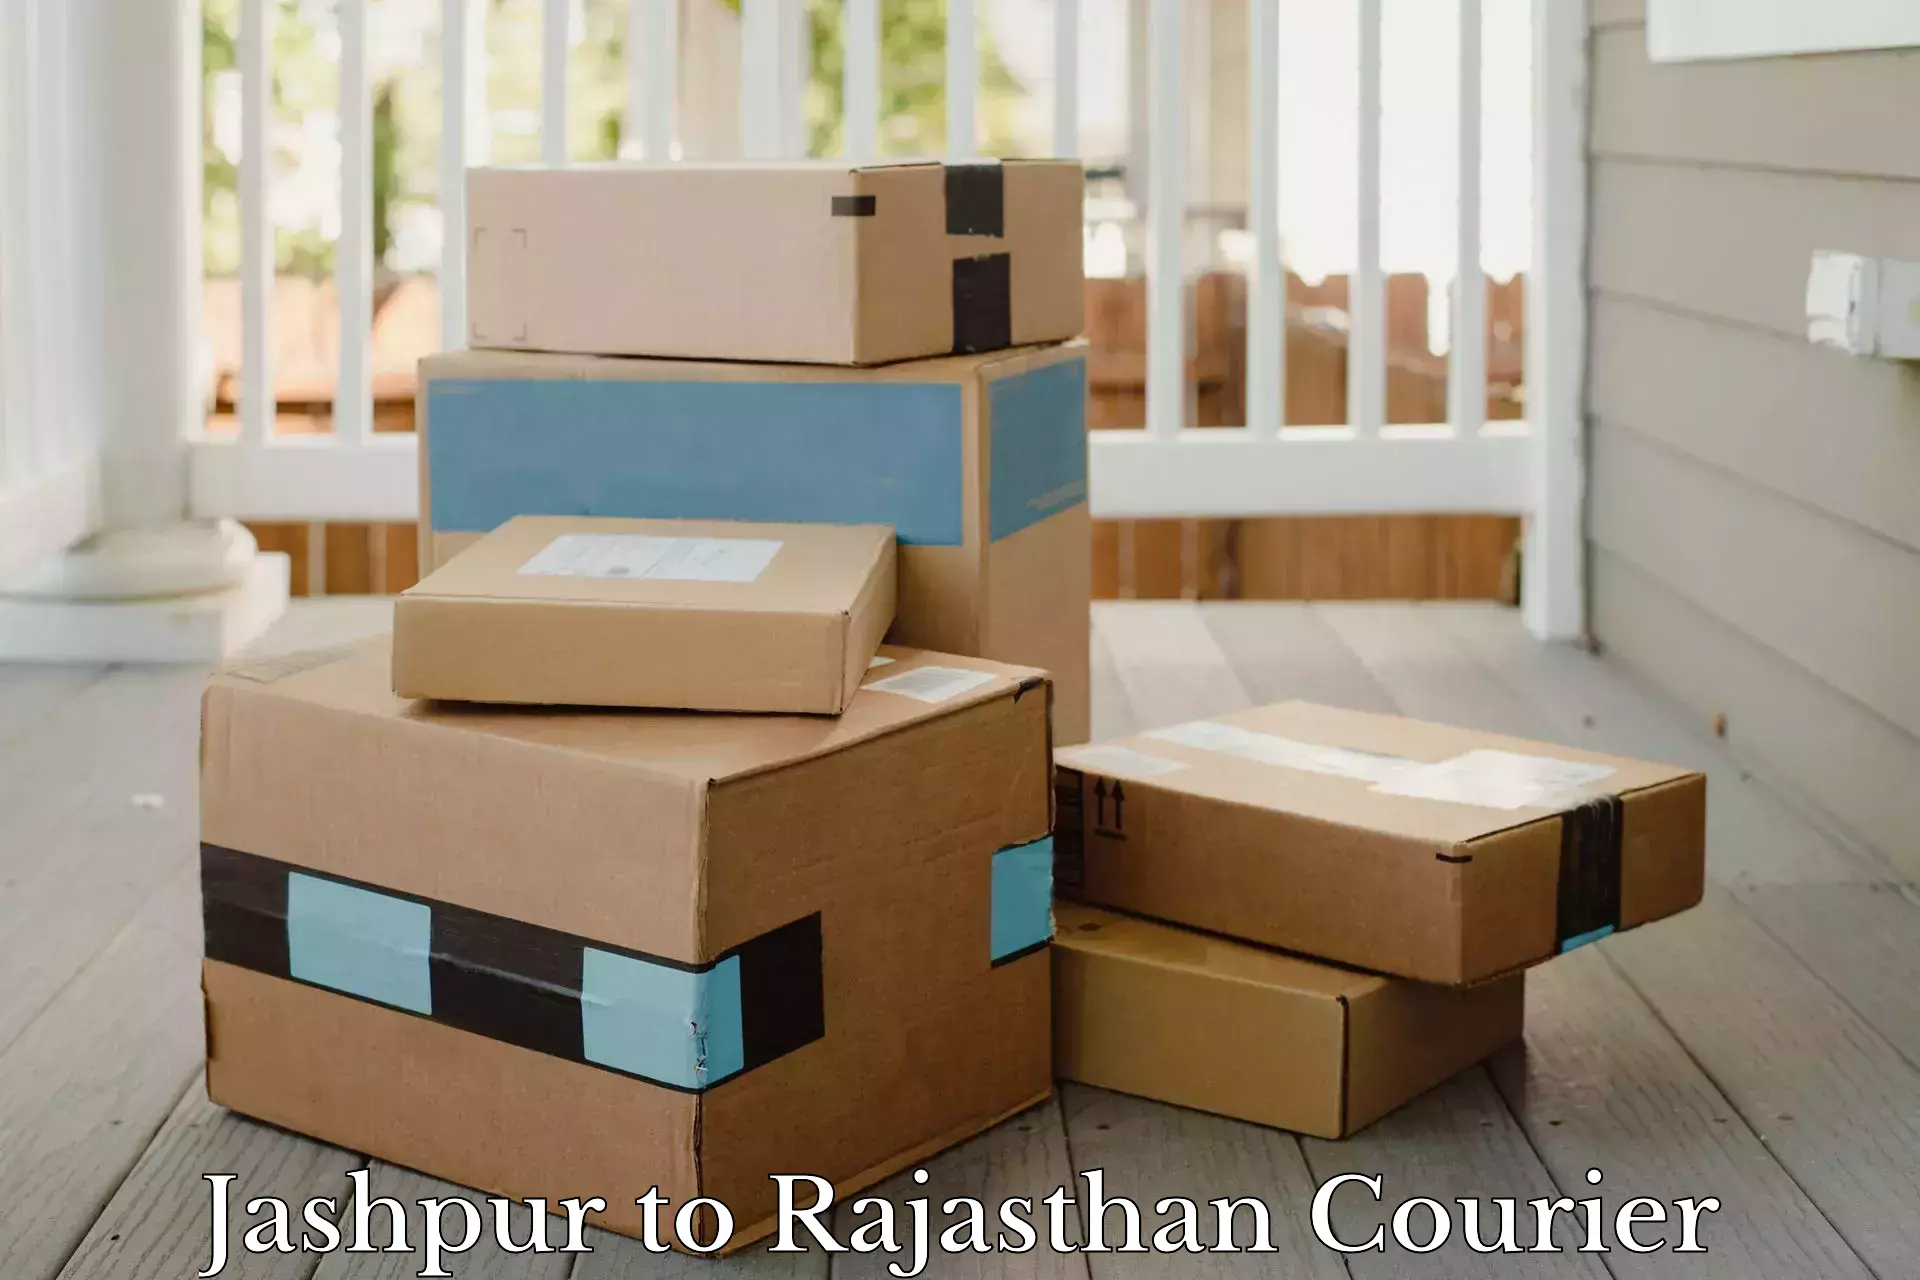 Courier service comparison Jashpur to Rajasthan